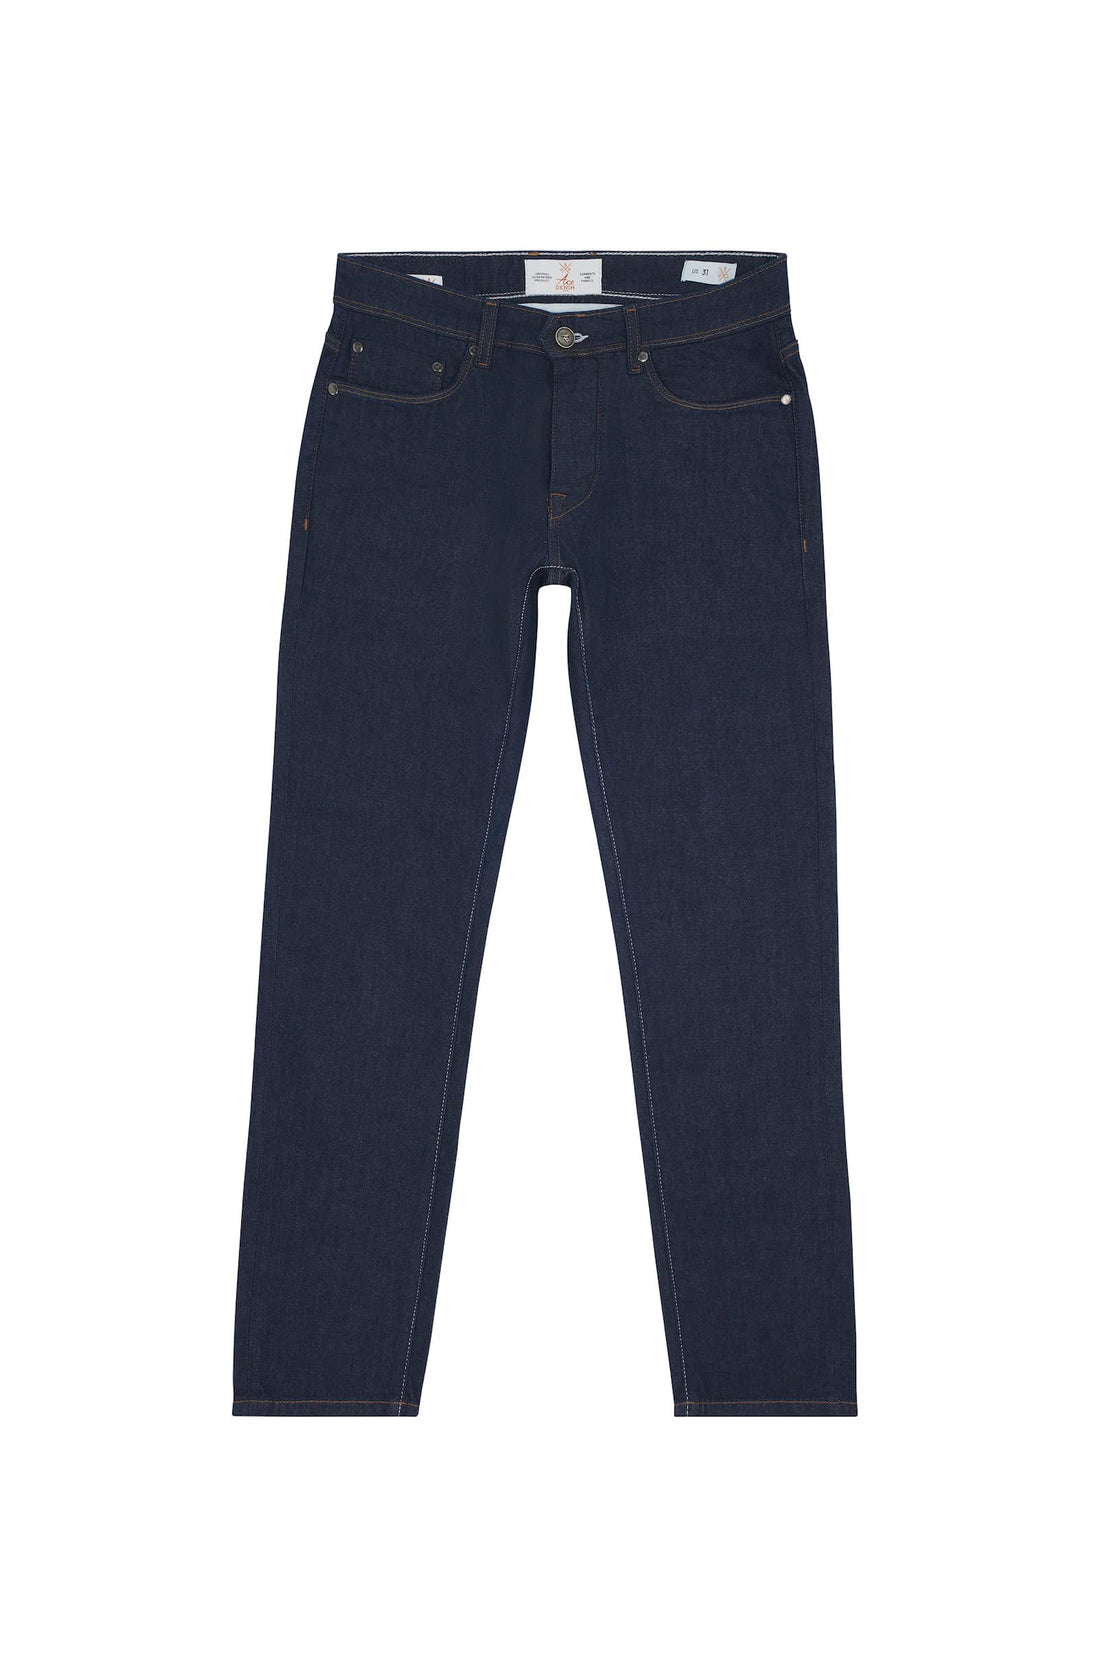 jeans homme coupe slim bleu foncé tissu selvedge japonais